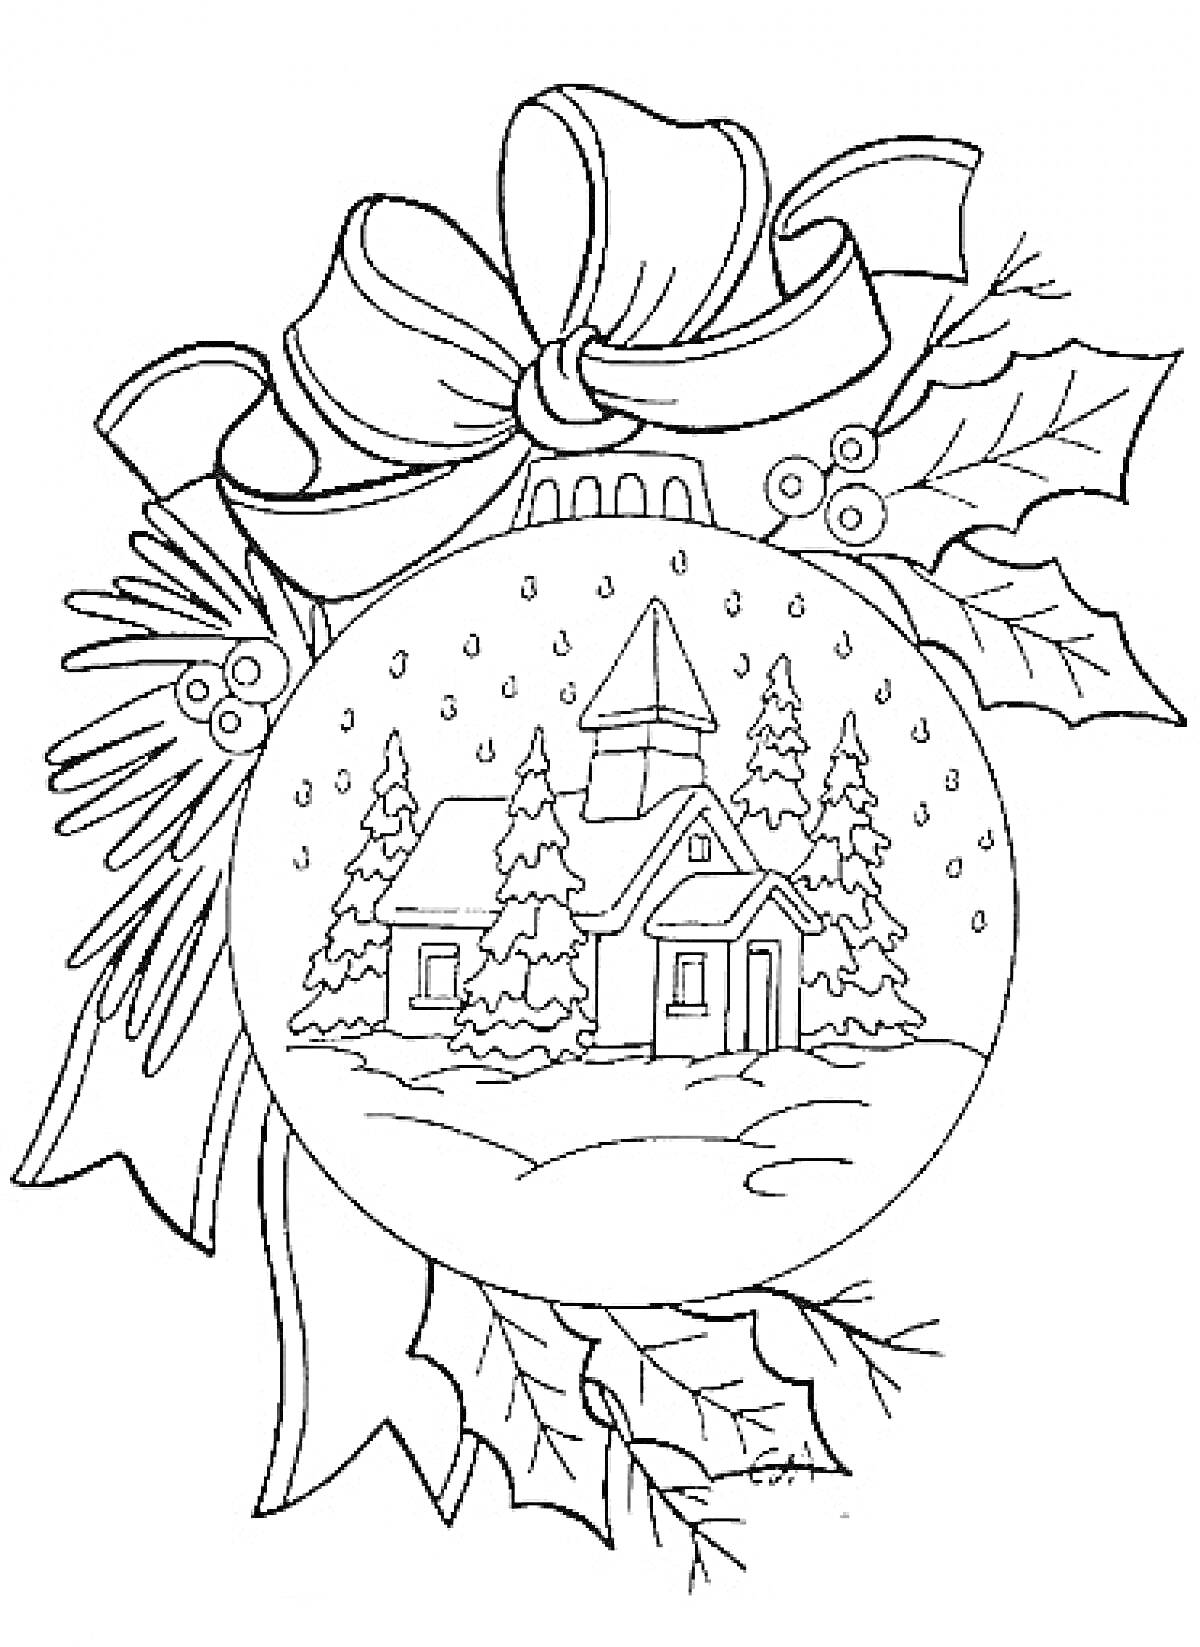 Раскраска Новогодний шар с изображением деревенского домика, деревьев, снега, банта, еловых веток и листьев остролиста